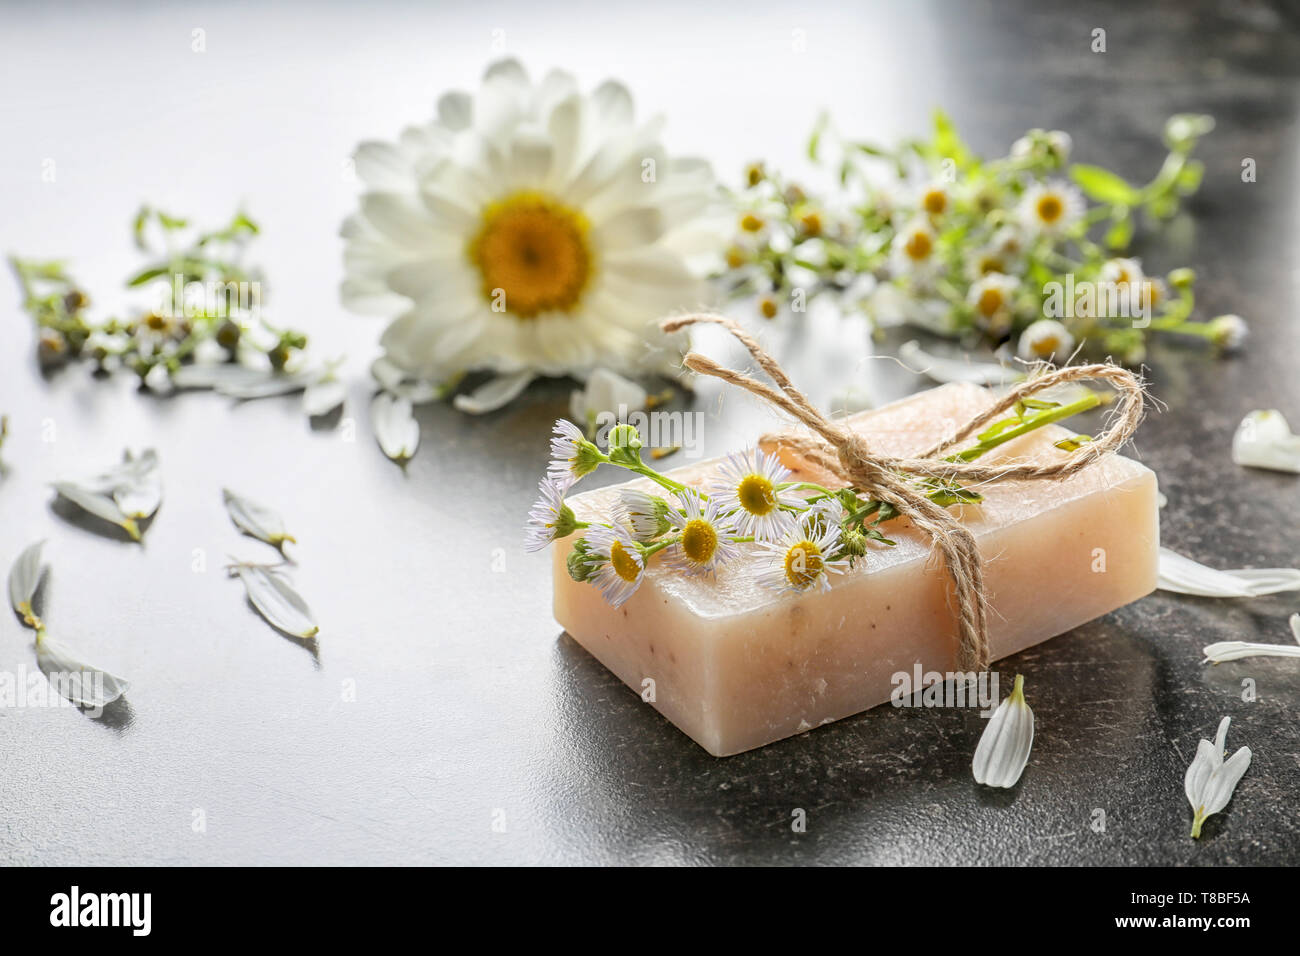 Jabón casero natural con flores de manzanilla en la mesa